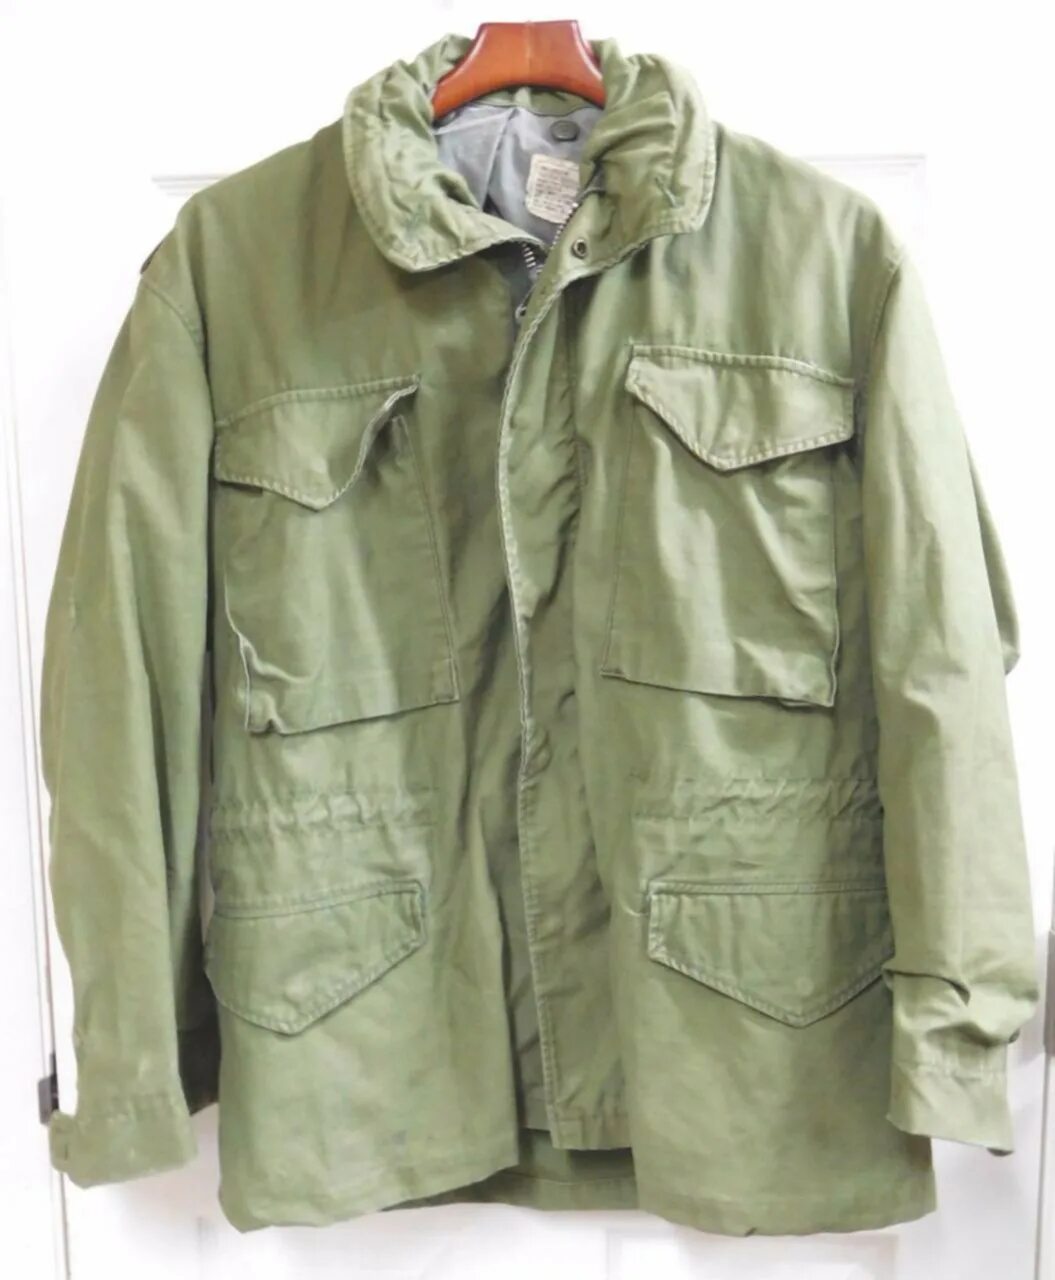 М 65 олива. Куртка Fighter м65. Куртка м65 Афган. Куртка м65 Olive.